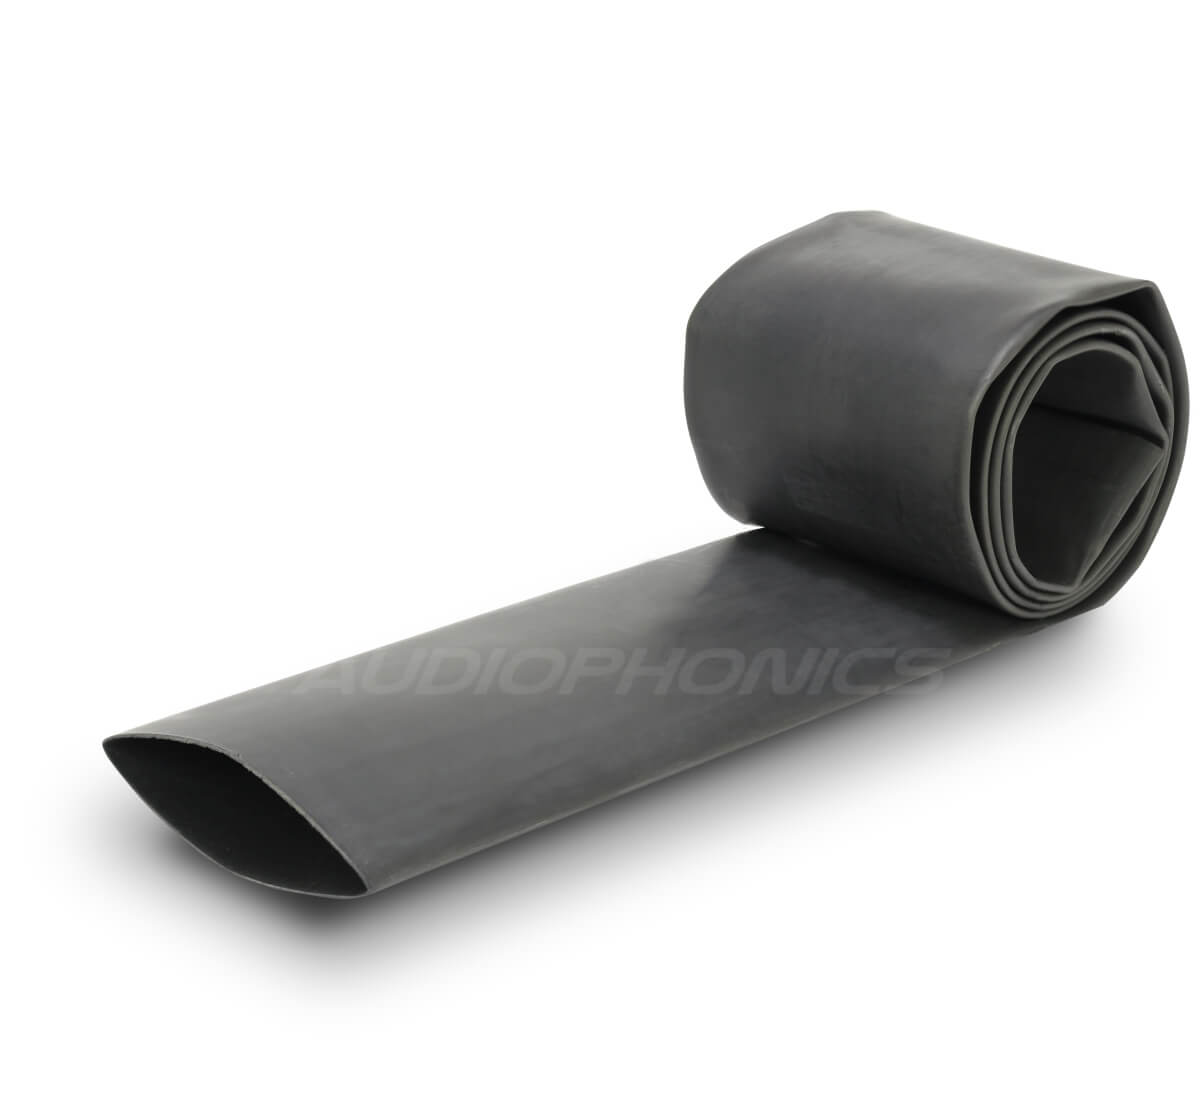 Heat-shrink tubing 2:1 Ø25mm Black (1m)